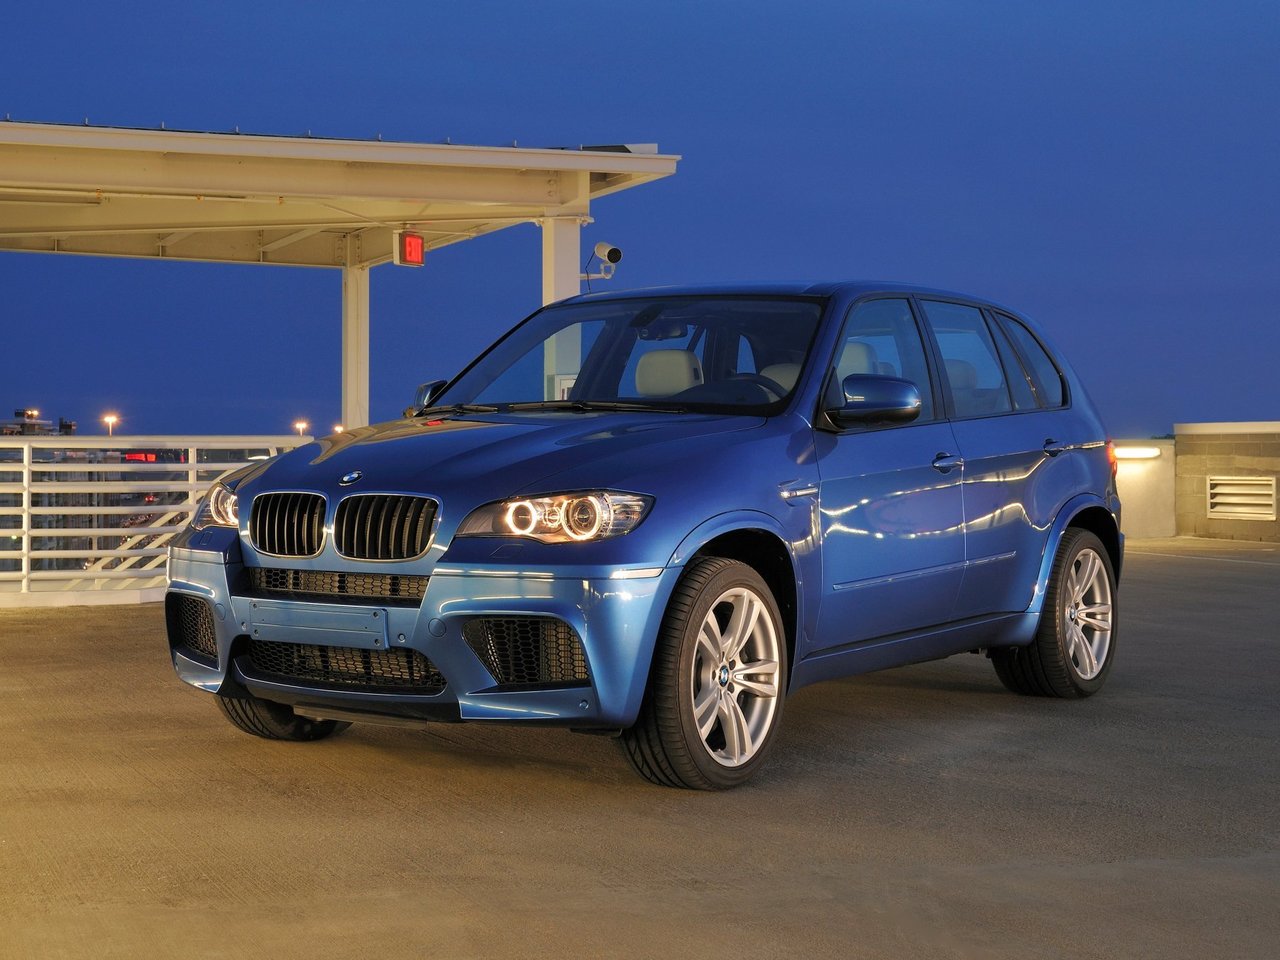 Расход газа одной комплектации внедорожника пять дверей BMW X5 M. Разница стоимости заправки газом и бензином. Автономный пробег до и после установки ГБО.